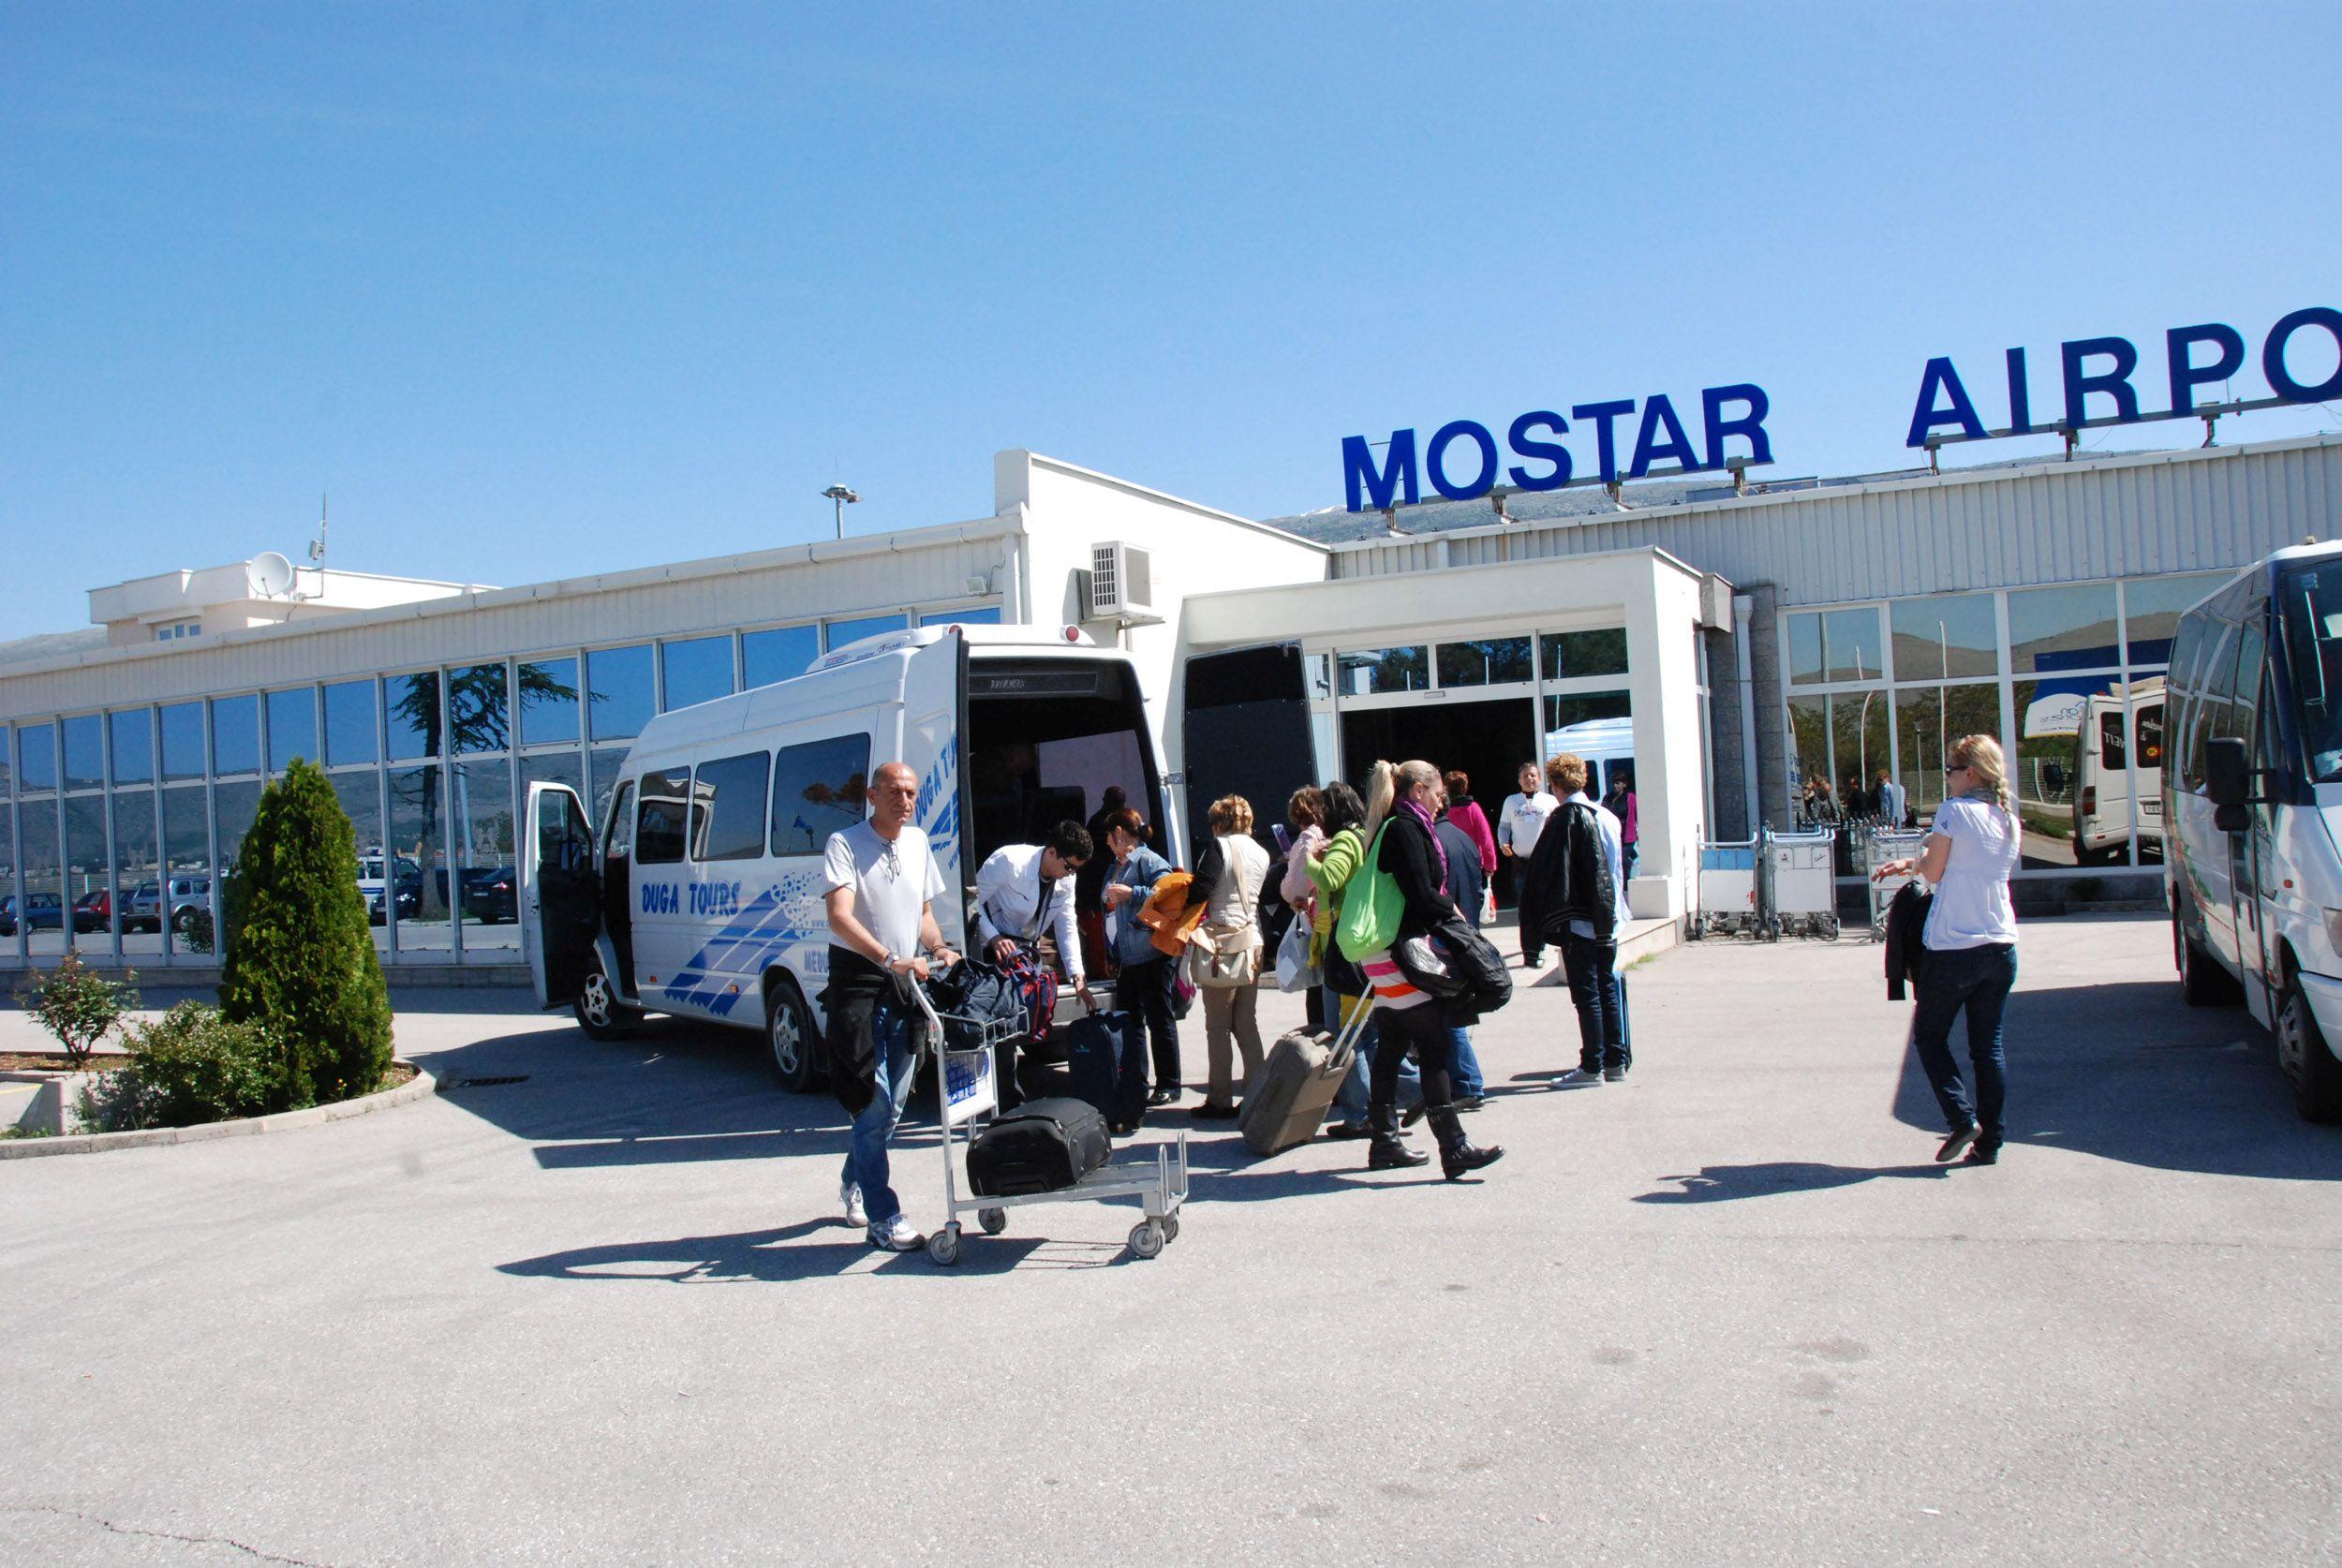 Ko će pobijediti u igri mačke i miša na Aerodromu Mostar?